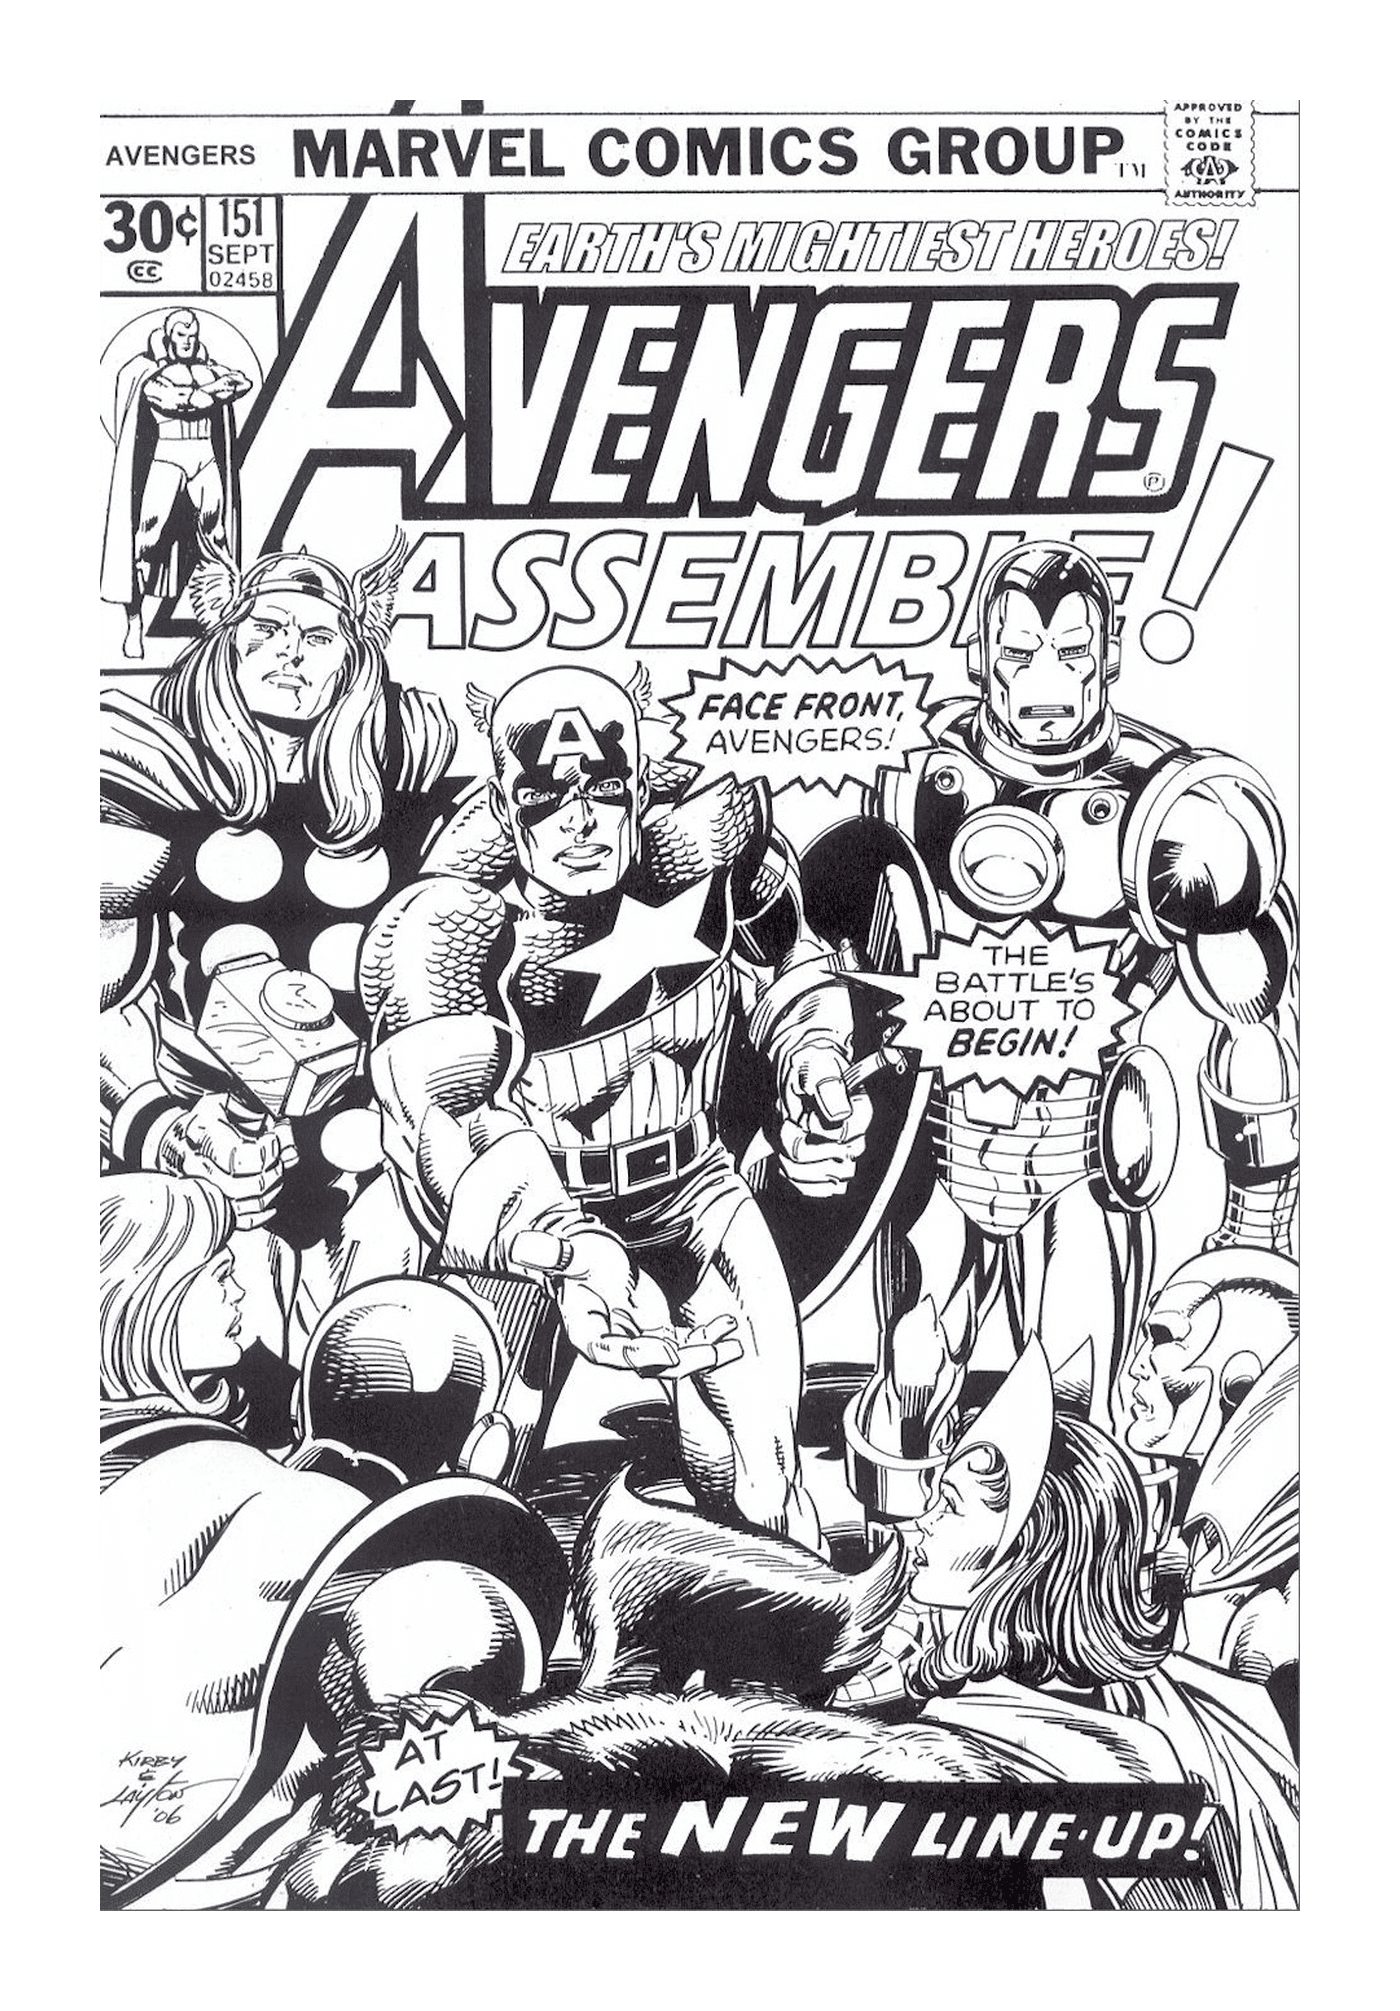  Ein Cover von Marvel Comics mit einer Superheldengruppe 